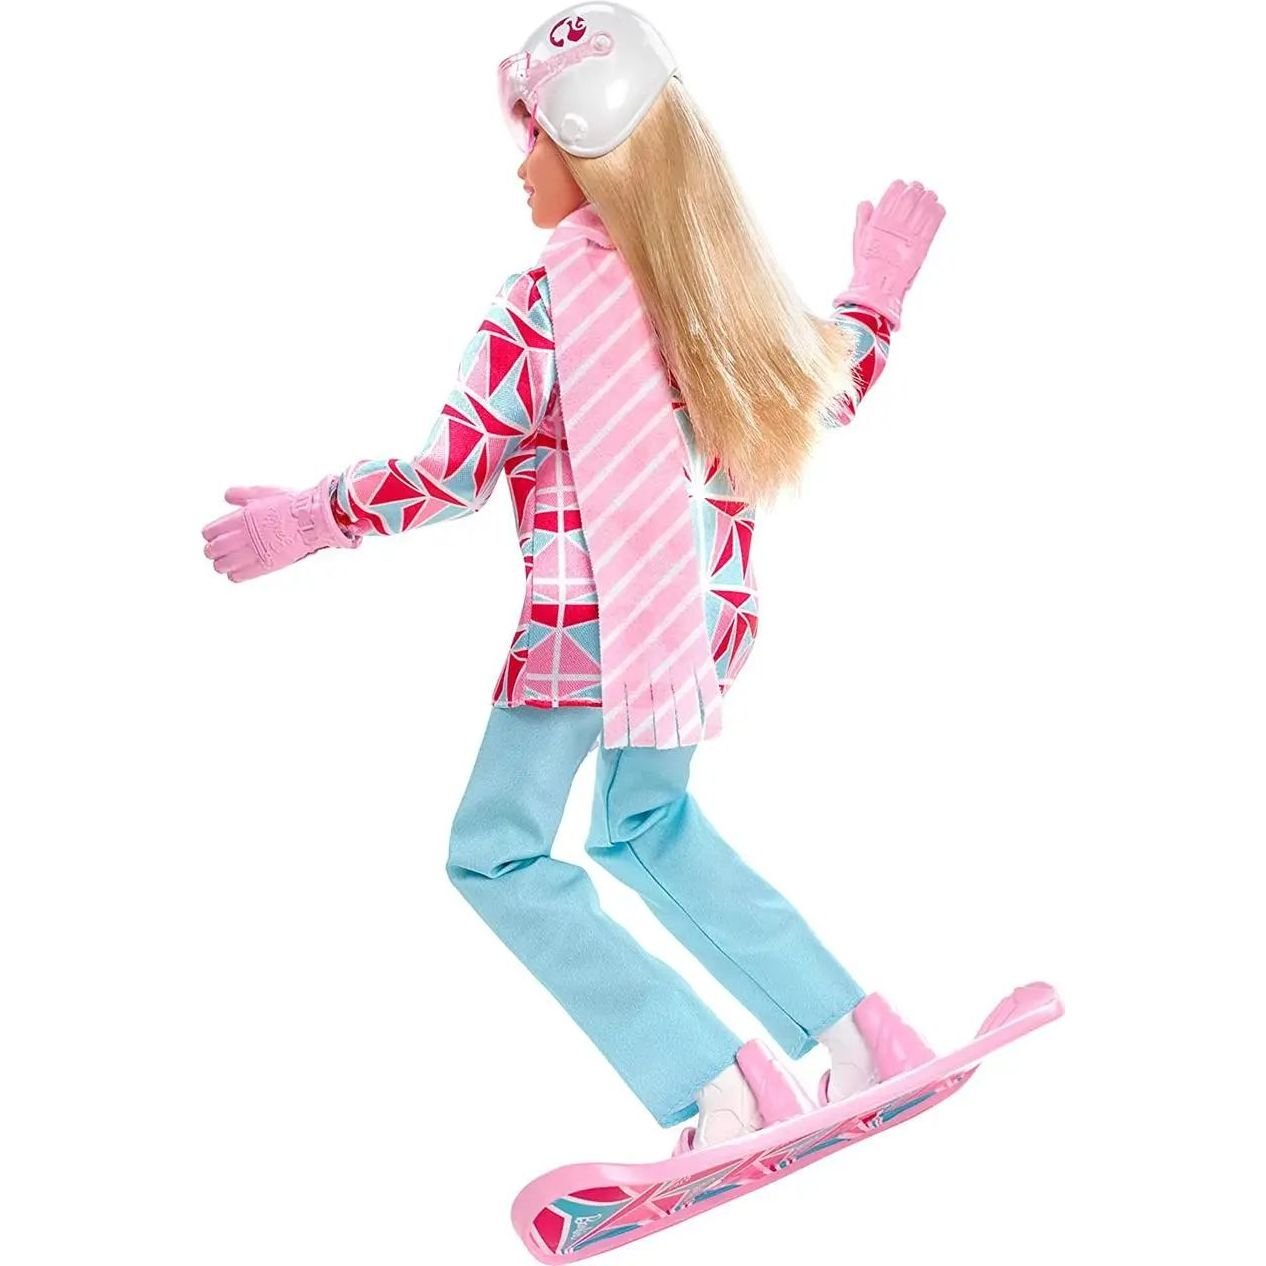 Кукла Barbie сноубордистка, серия Зимние виды спорта (HCN32) - фото 2